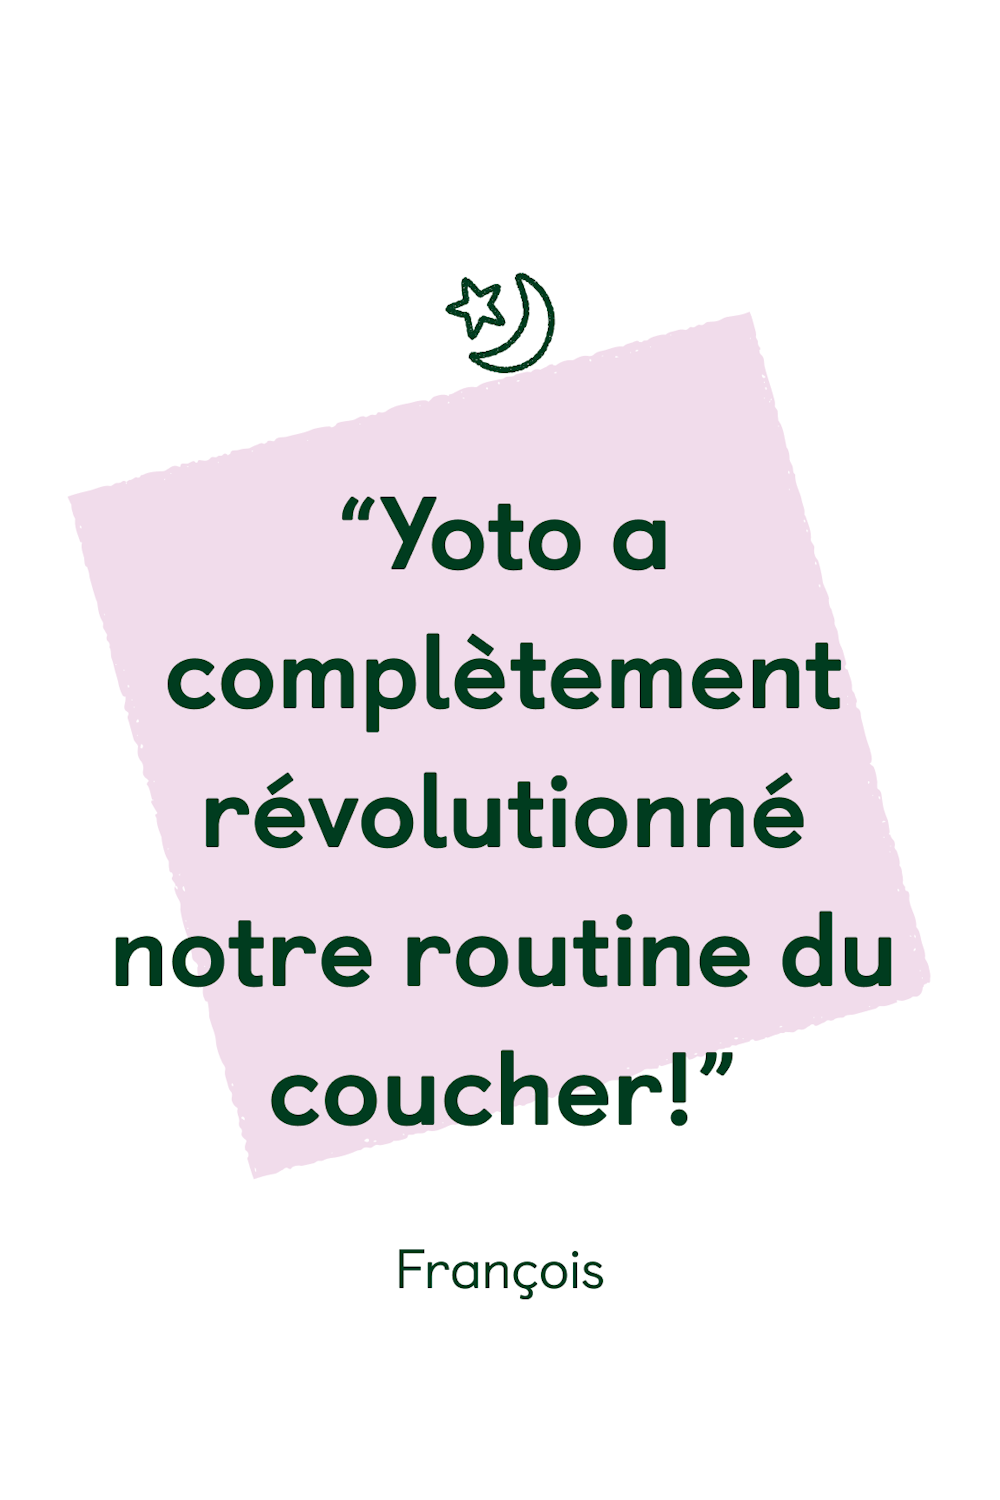 “Yoto a complètement révolutionné notre routine du coucher!”